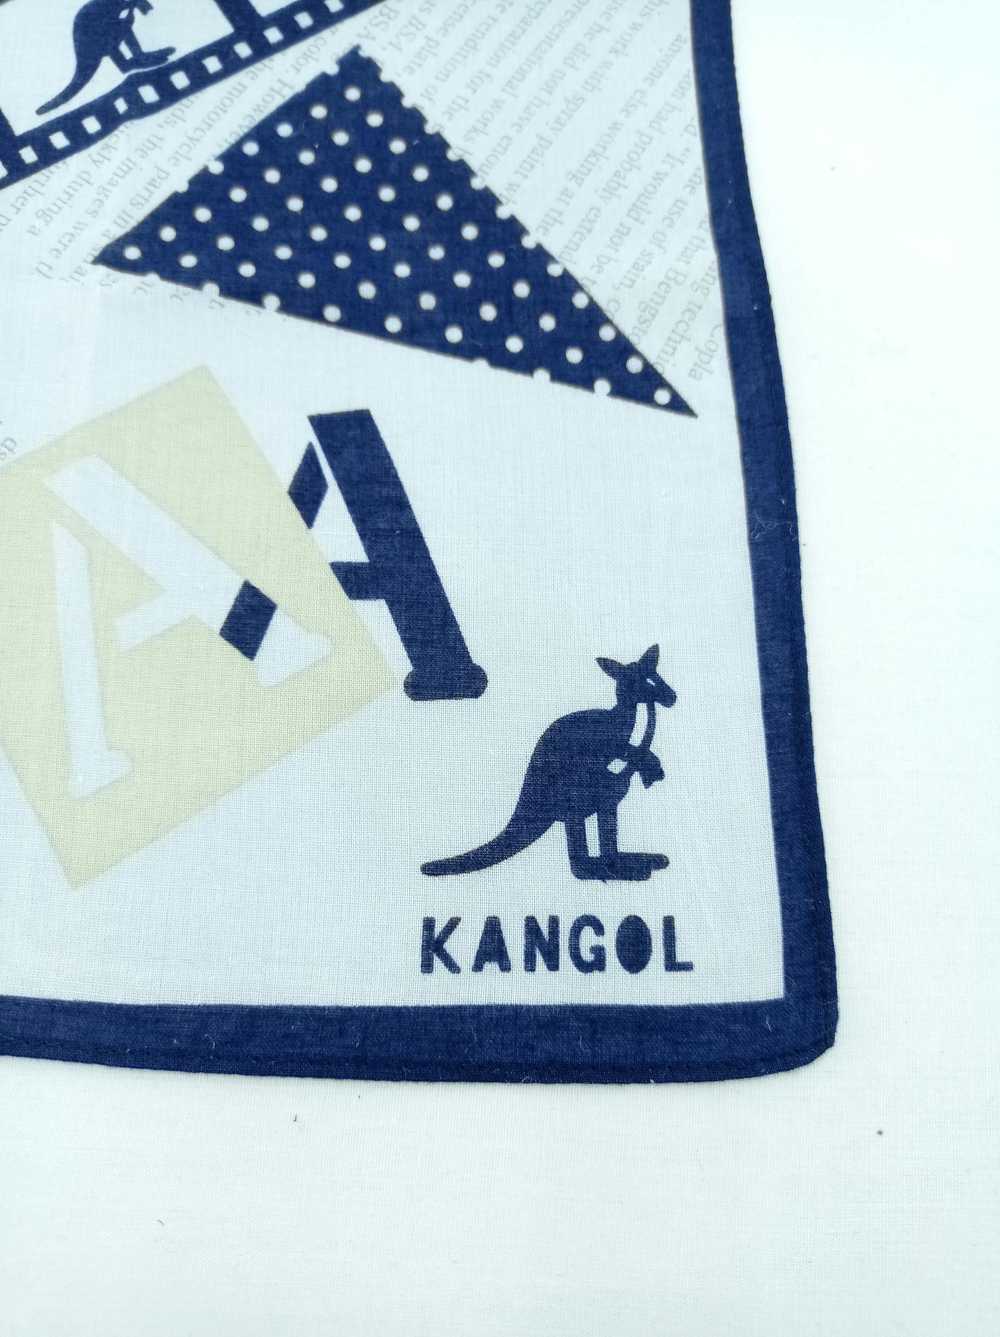 Kangol Kangol Handkerchief / Bandana / Neckwear - image 4